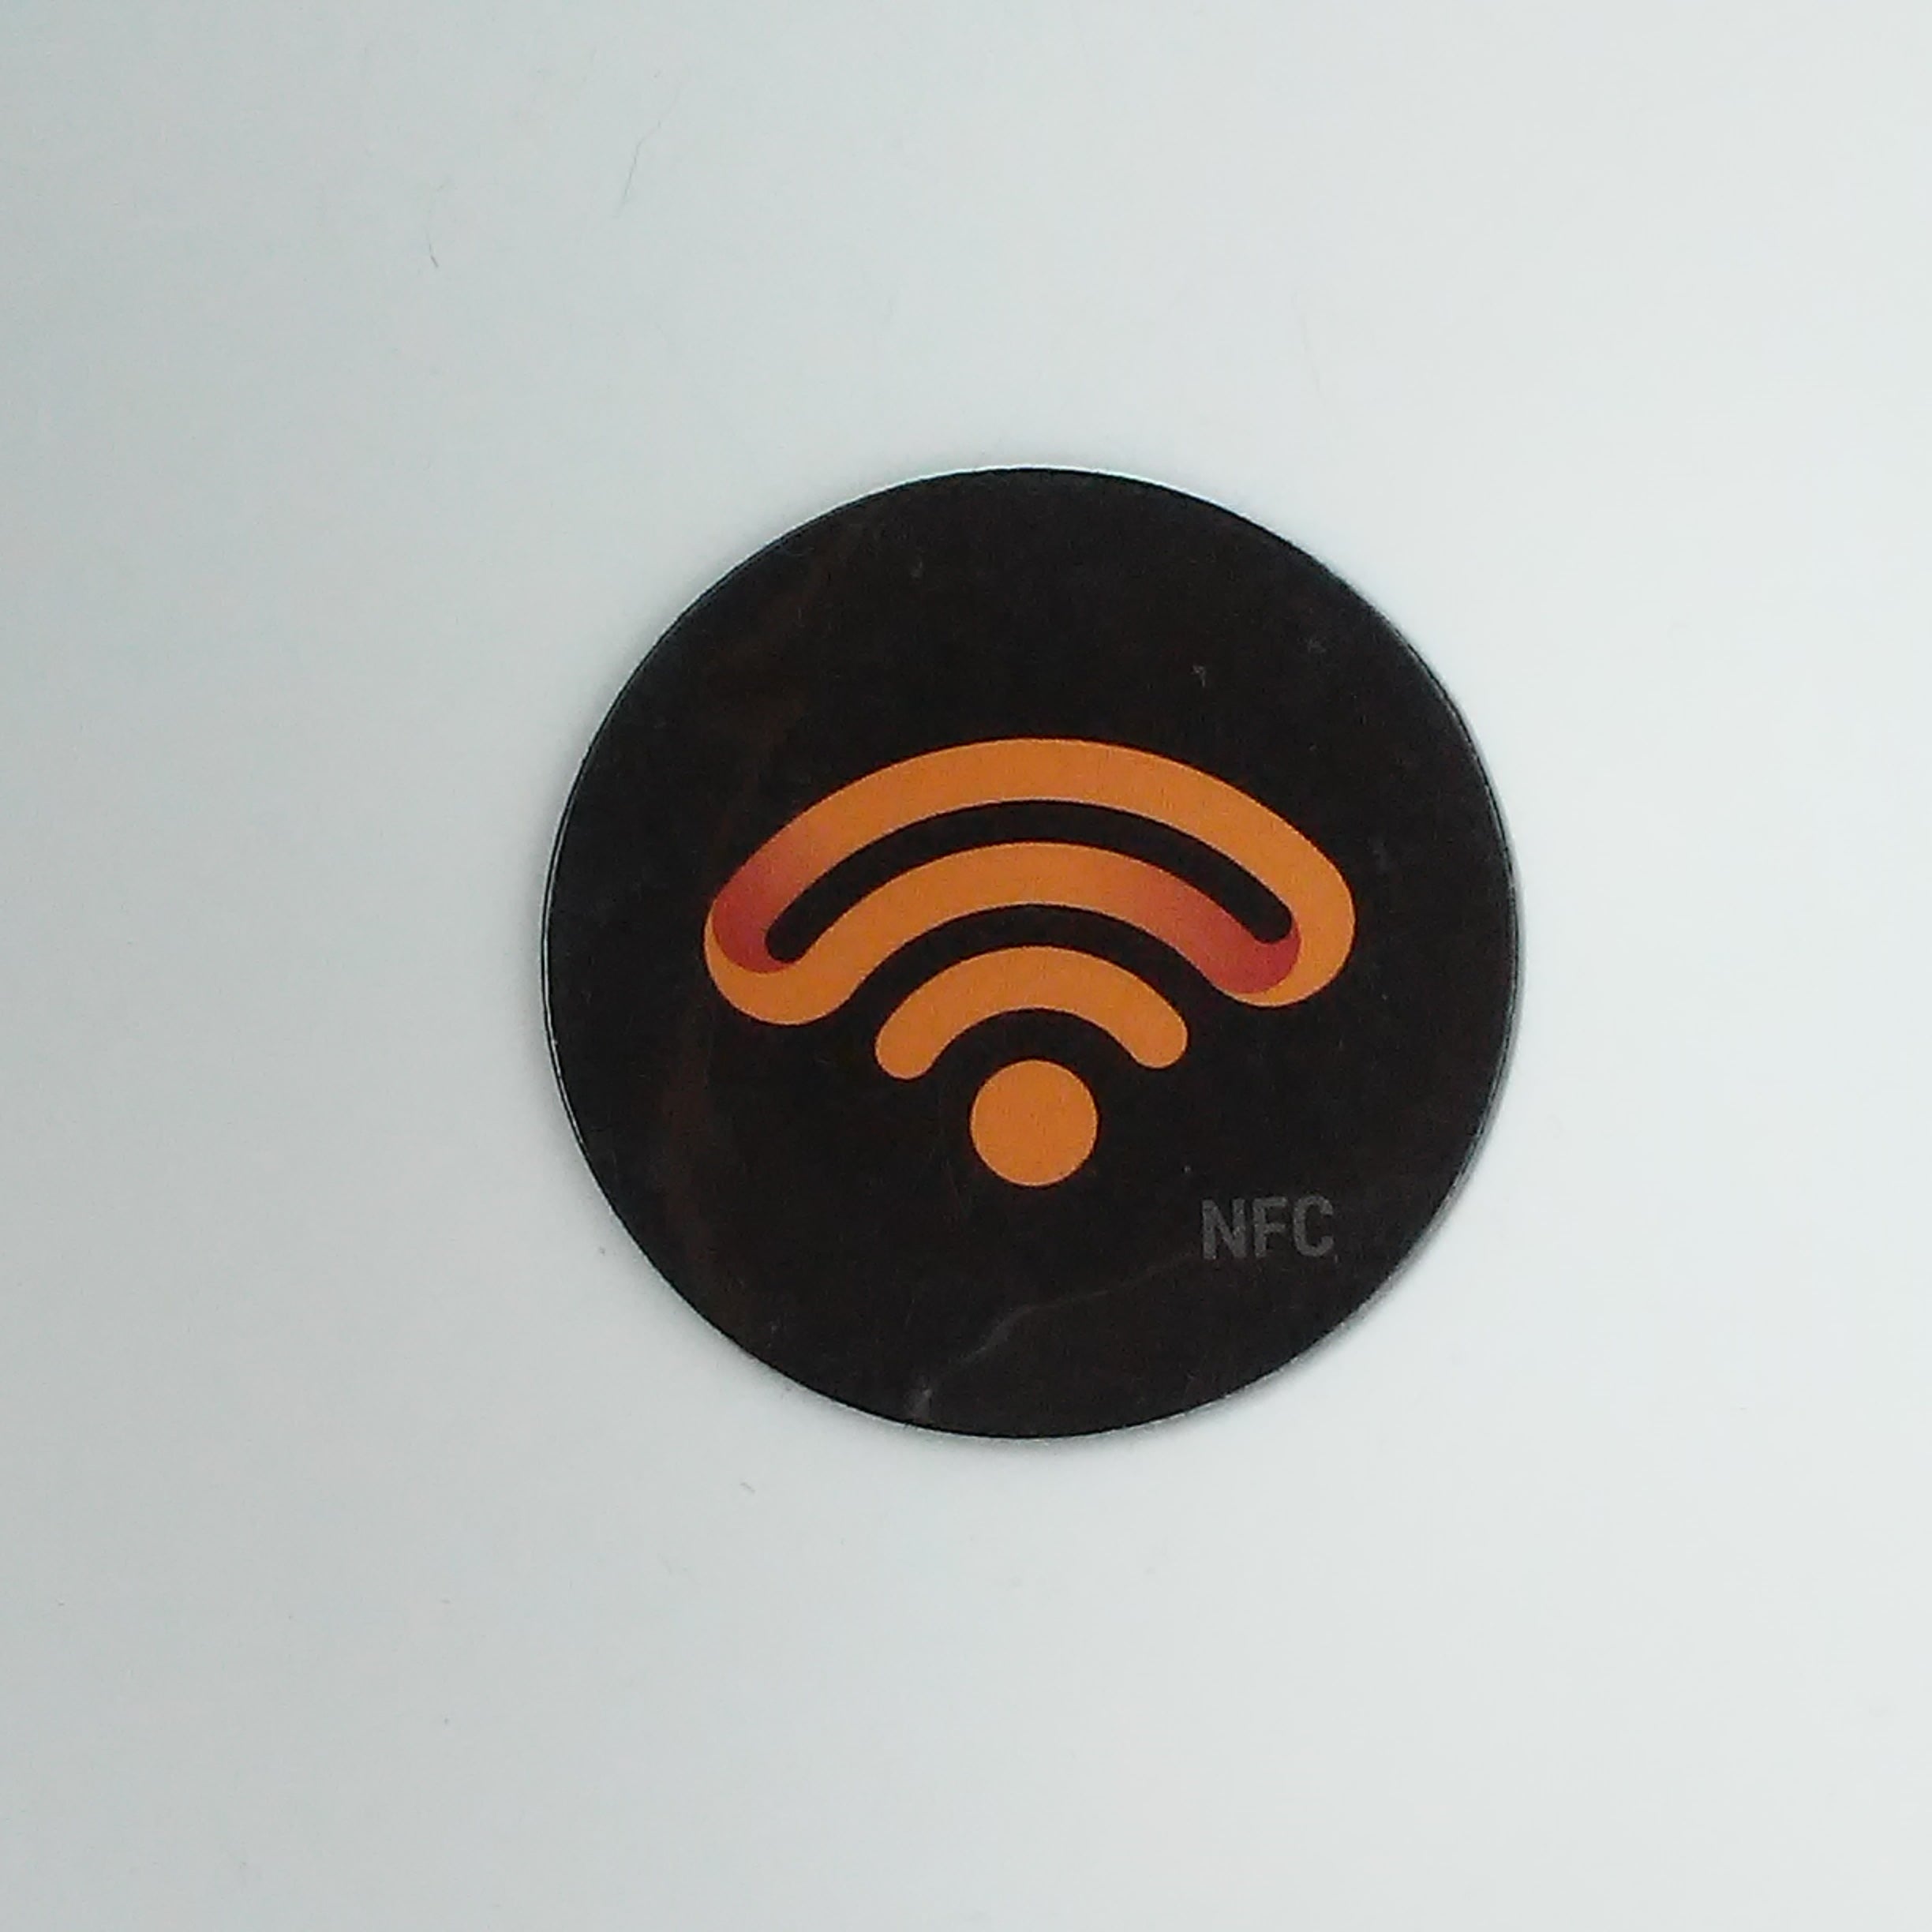 NFC Refrigerator Magnet - NTAG213